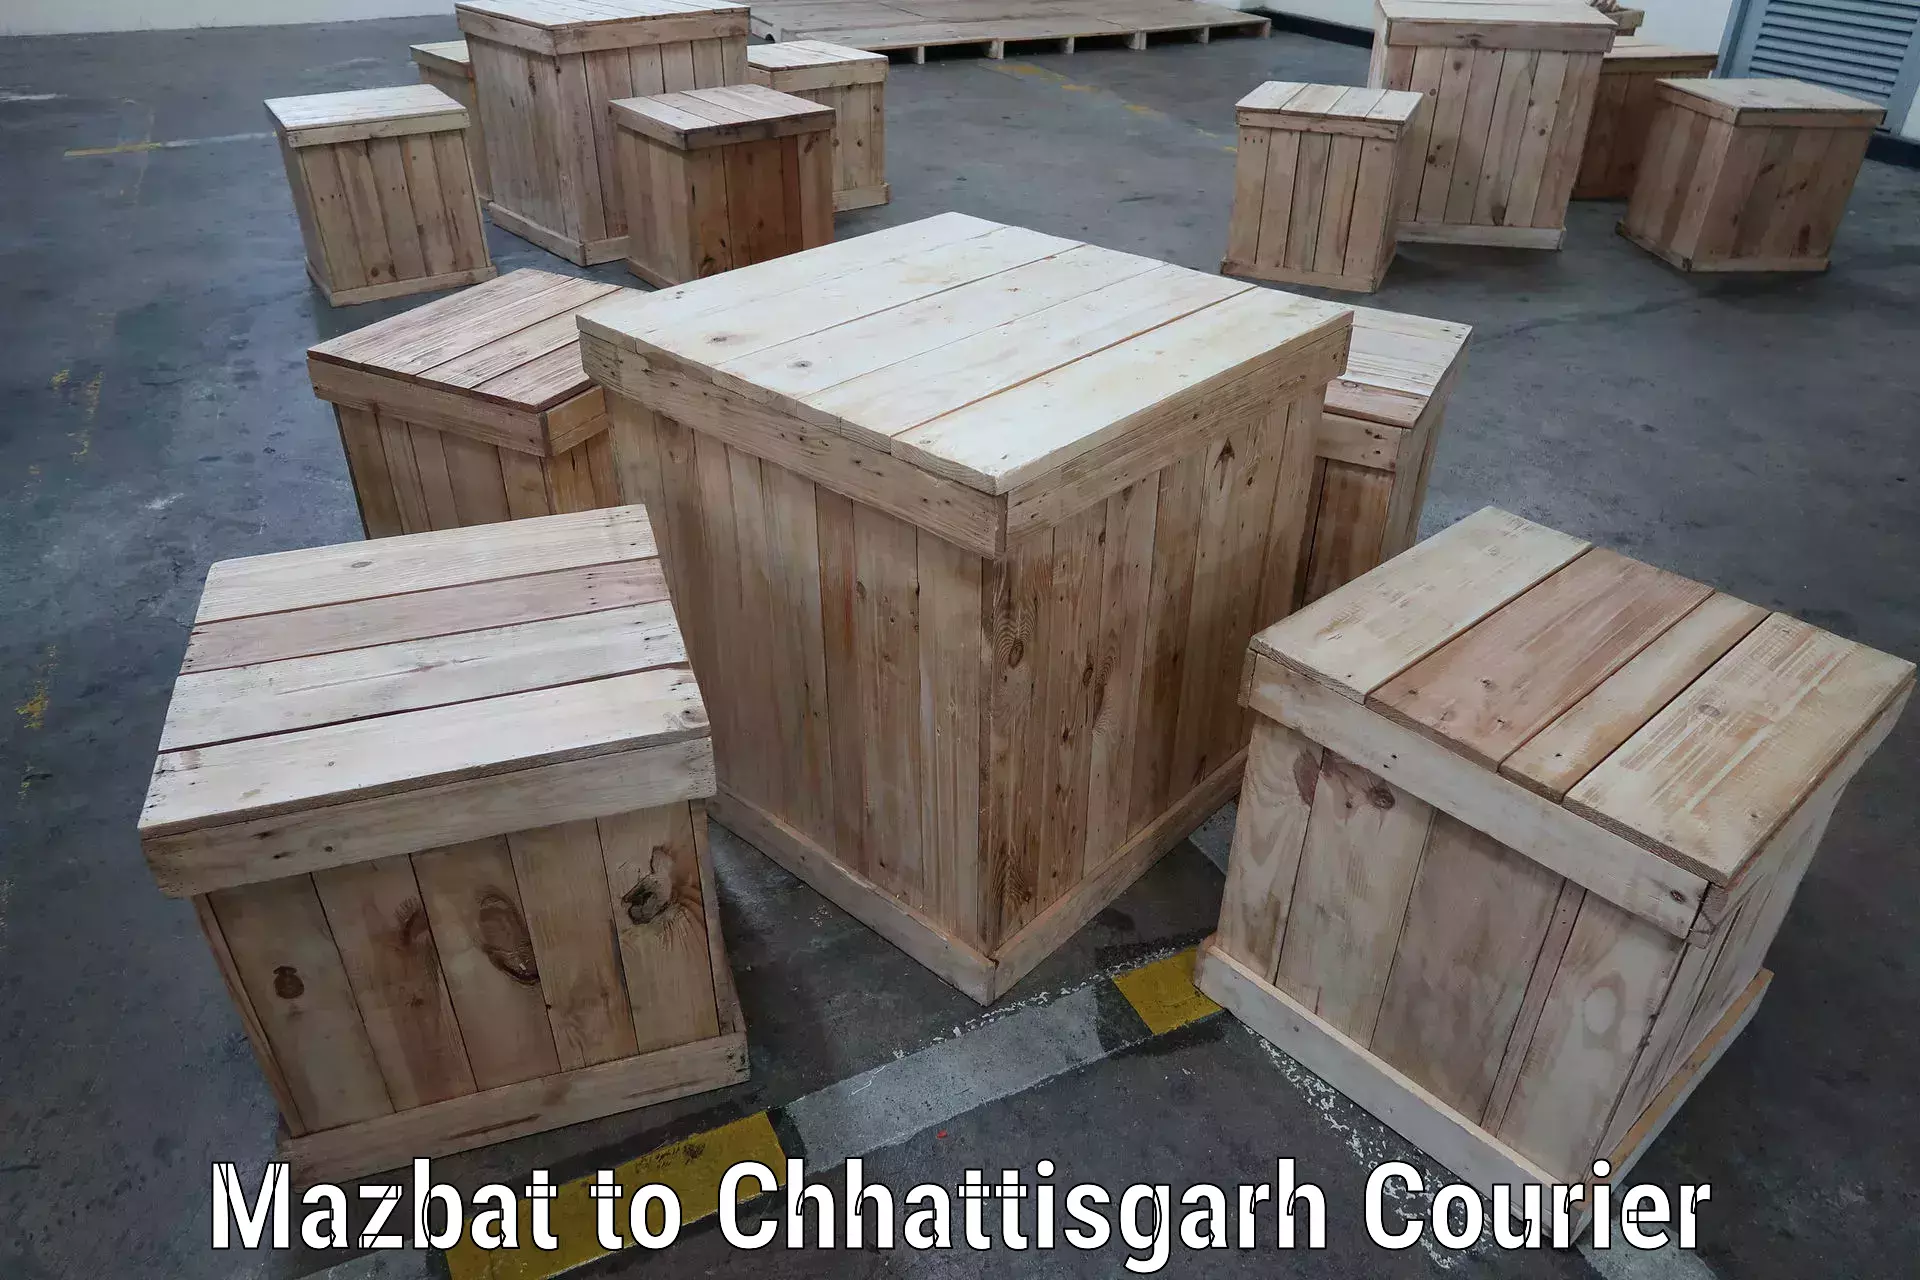 Efficient parcel service Mazbat to Bijapur Chhattisgarh